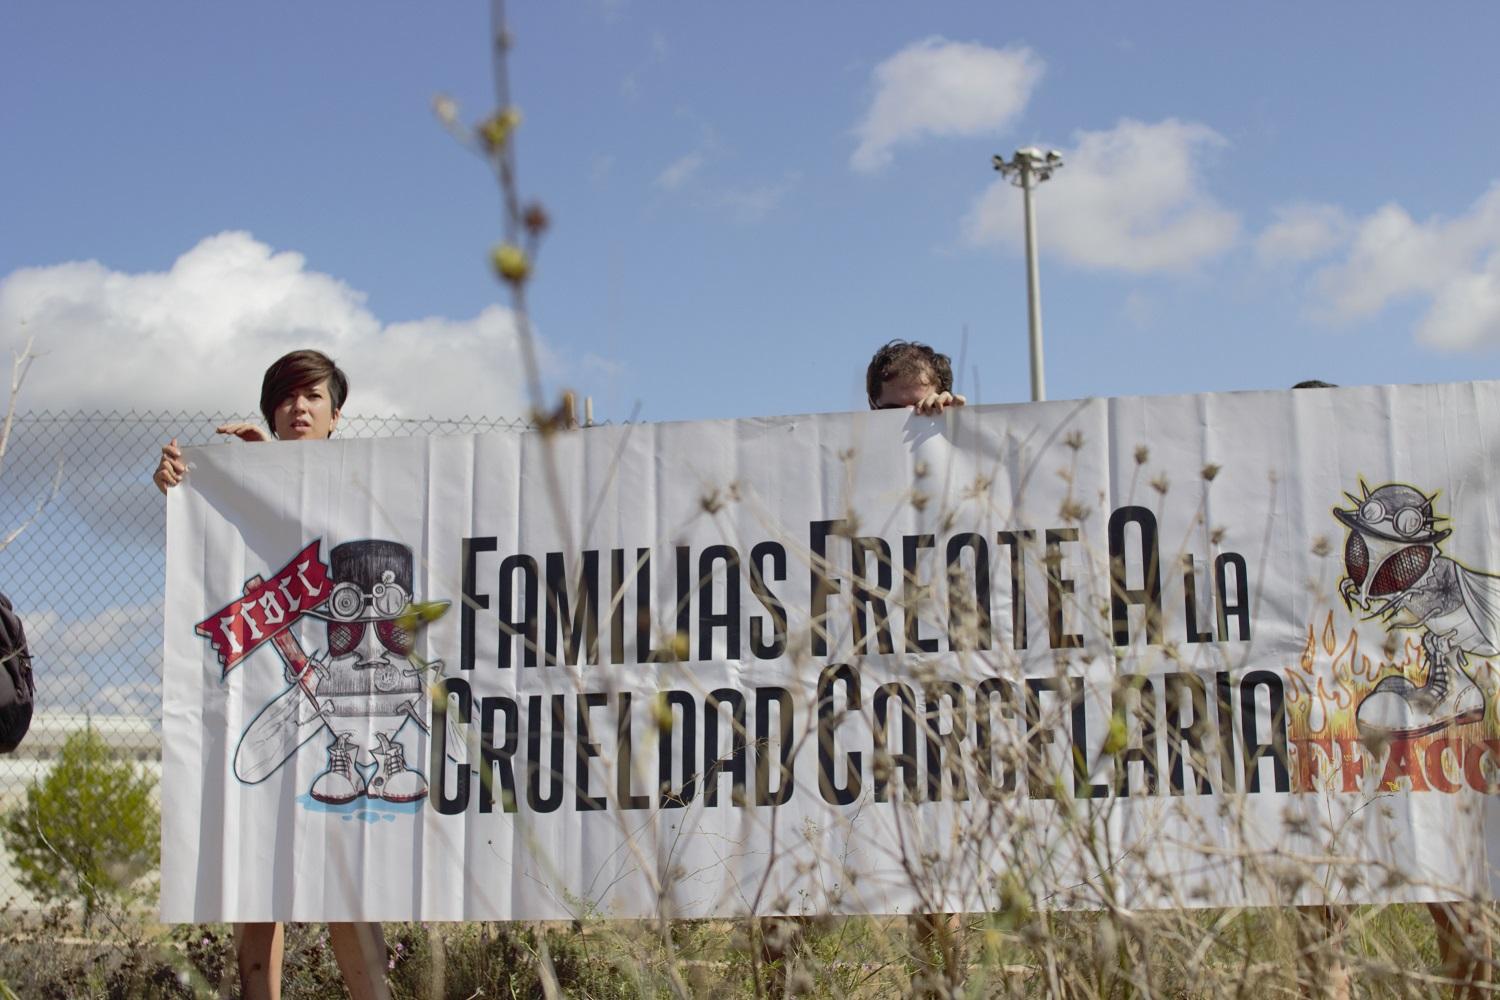 La campaña de solidaridad con Familias Frente a la Crueldad Carcelaria lleva 10 días en marcha